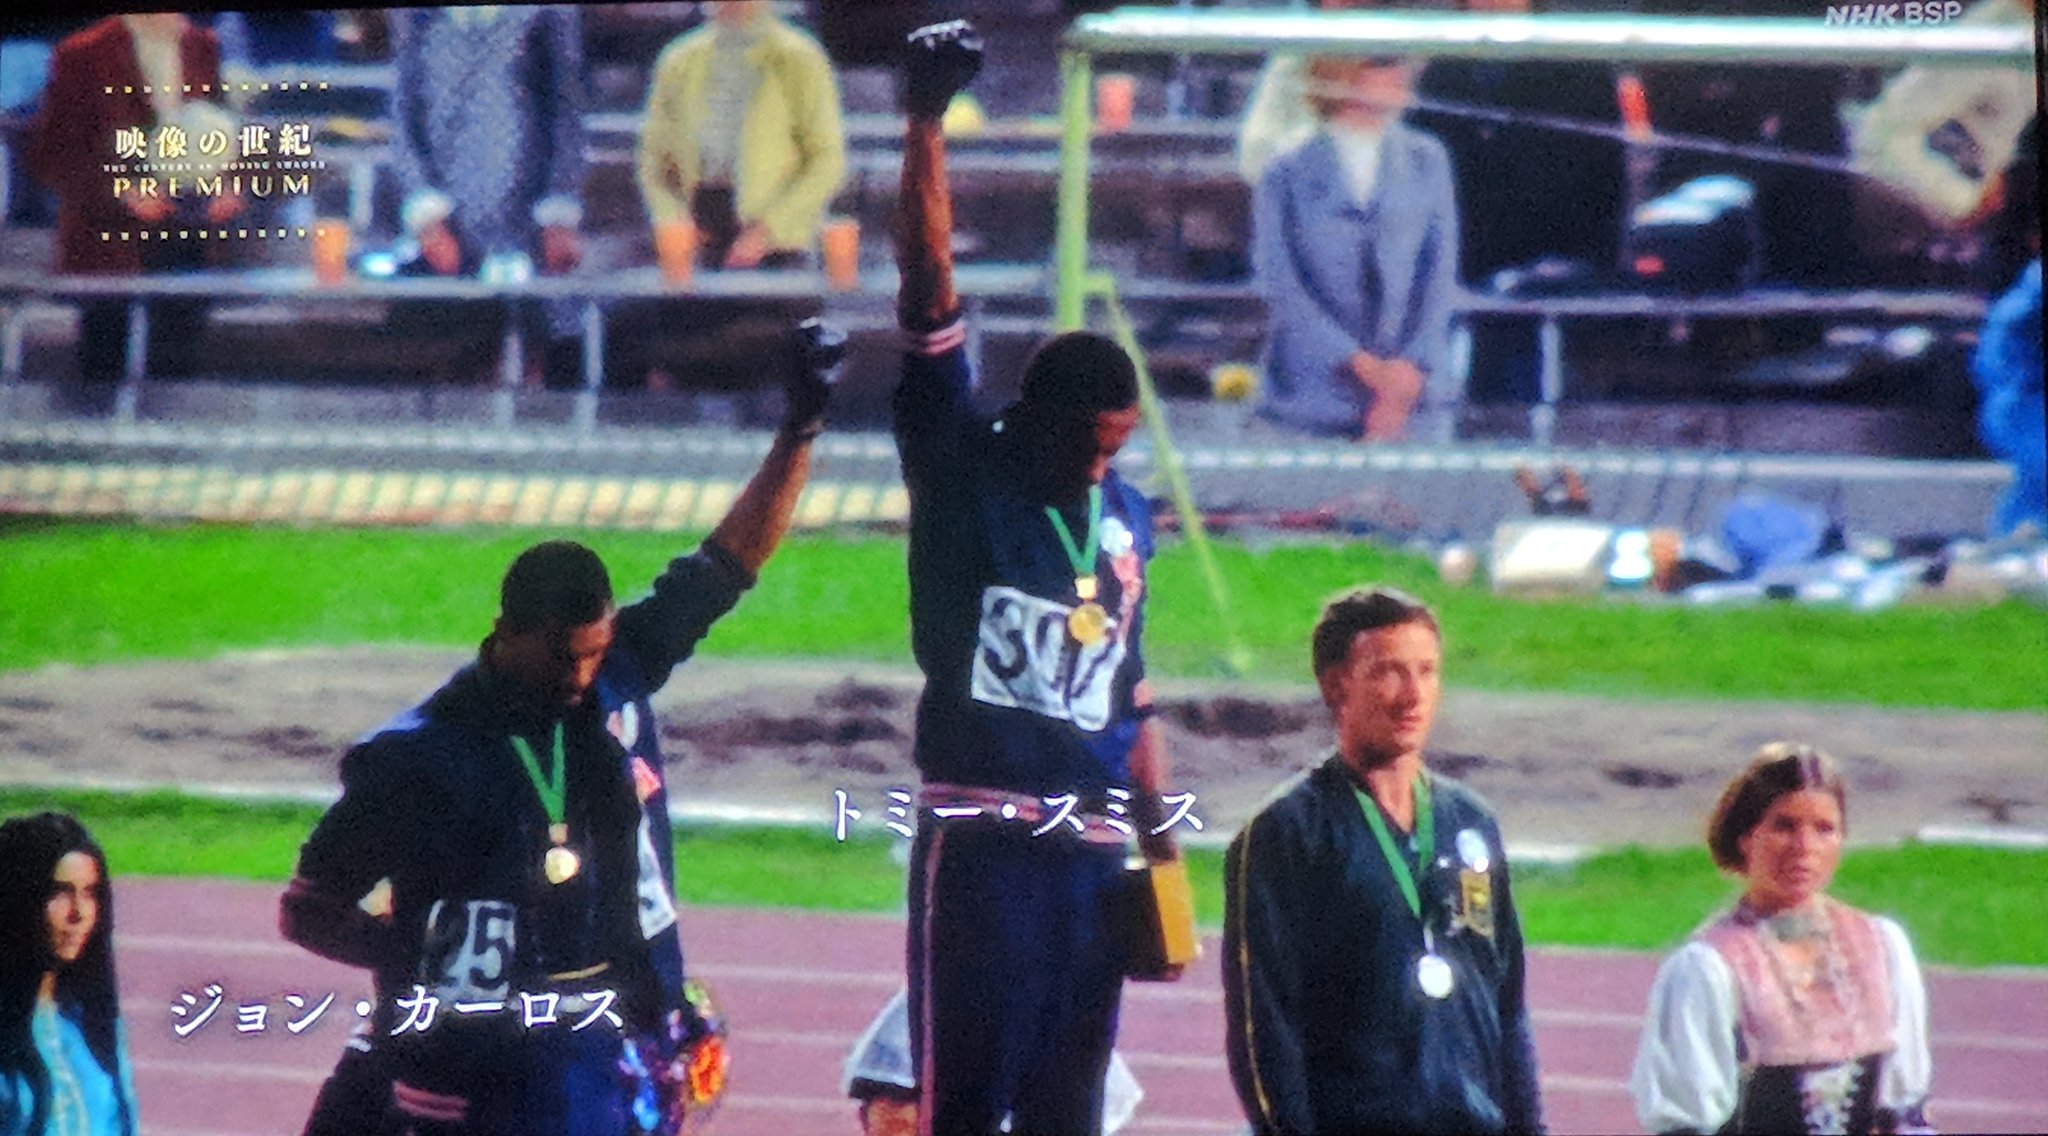 Mold 05年 アメリカのサンノゼ州立大学に ある銅像が建てられた 表彰台の上で拳を突き上げたトミー スミスとジョン カーロスの銅像である オリンピックから追放された2人の名誉は回復された だがあの日 ともに立ったピーター ノーマンの姿は造